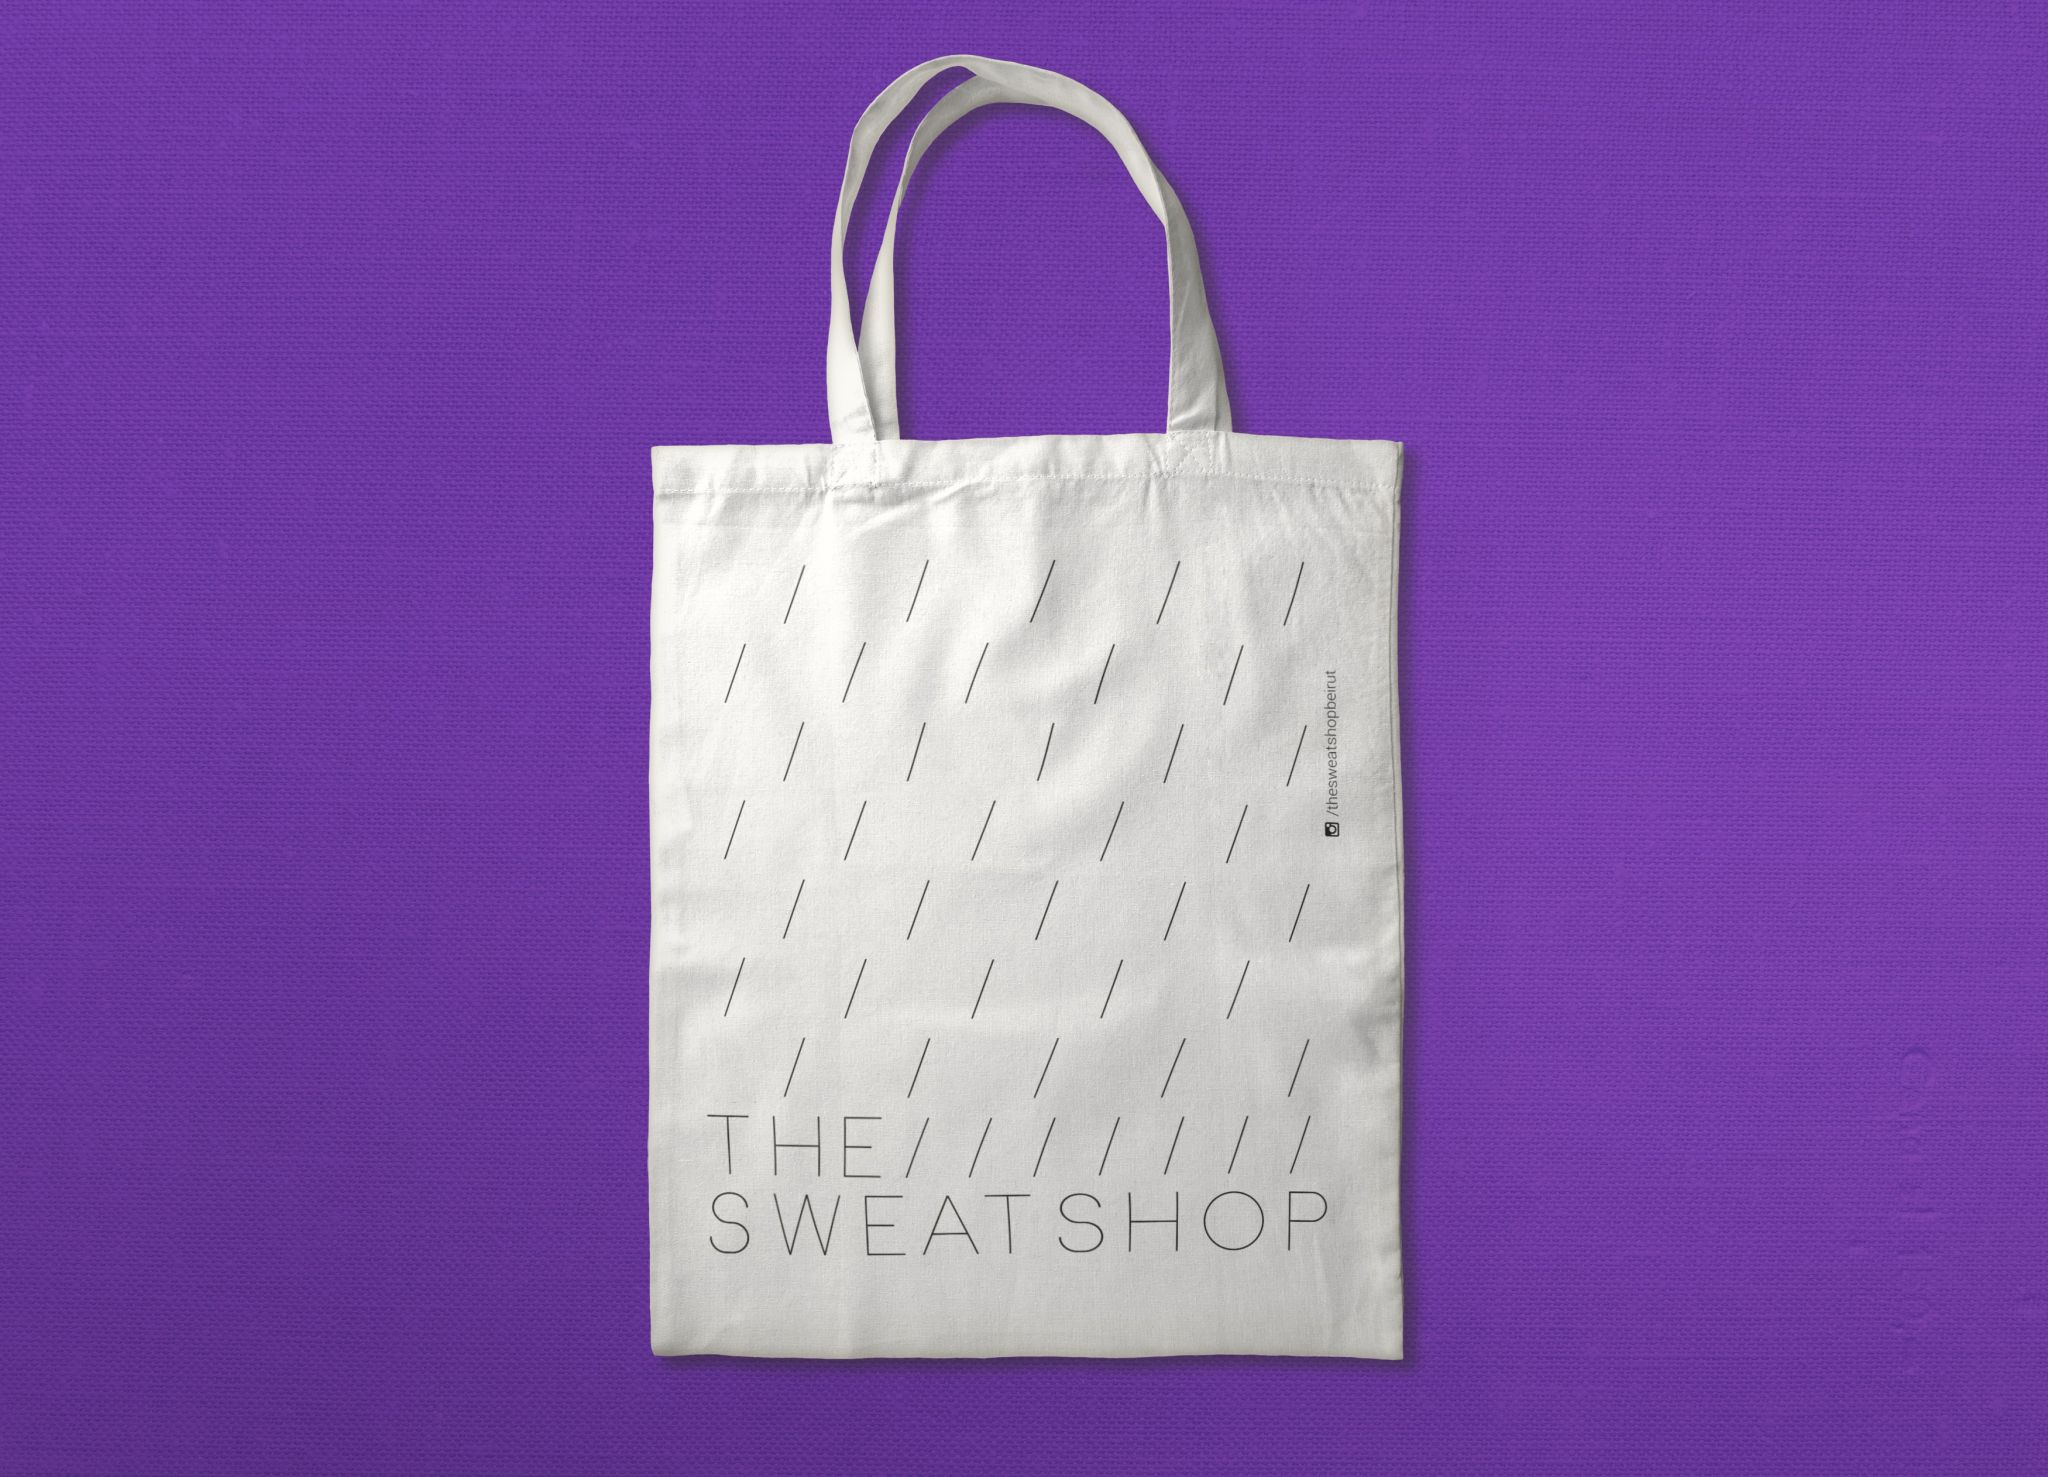 Branding the sweatshop bag